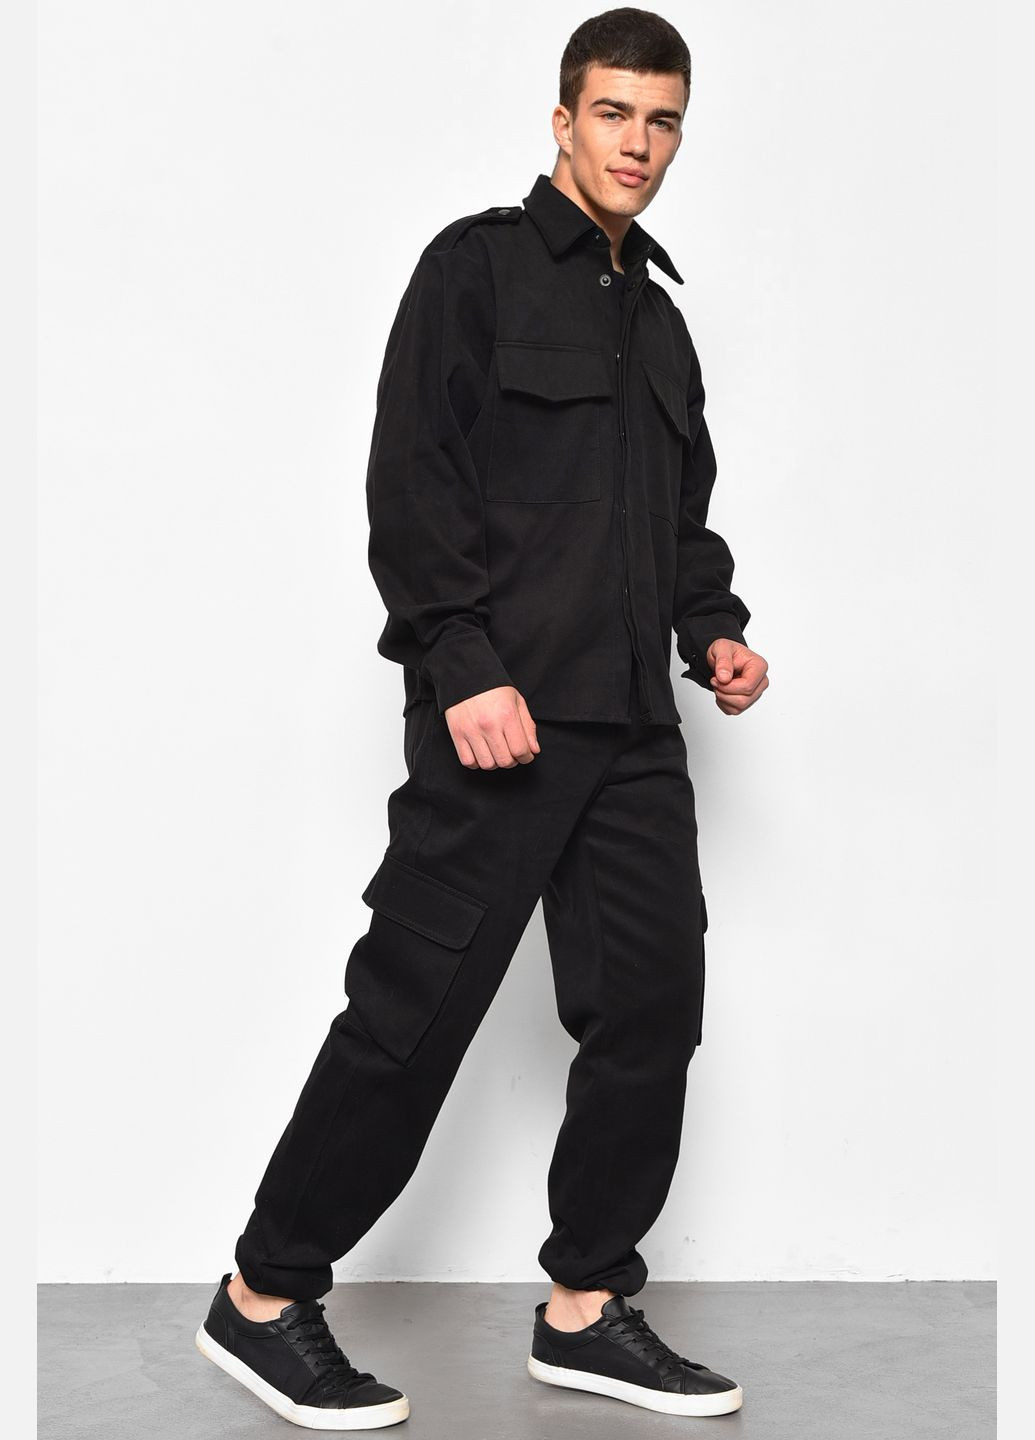 Черный демисезонный костюм мужской черного цвета брючный Let's Shop